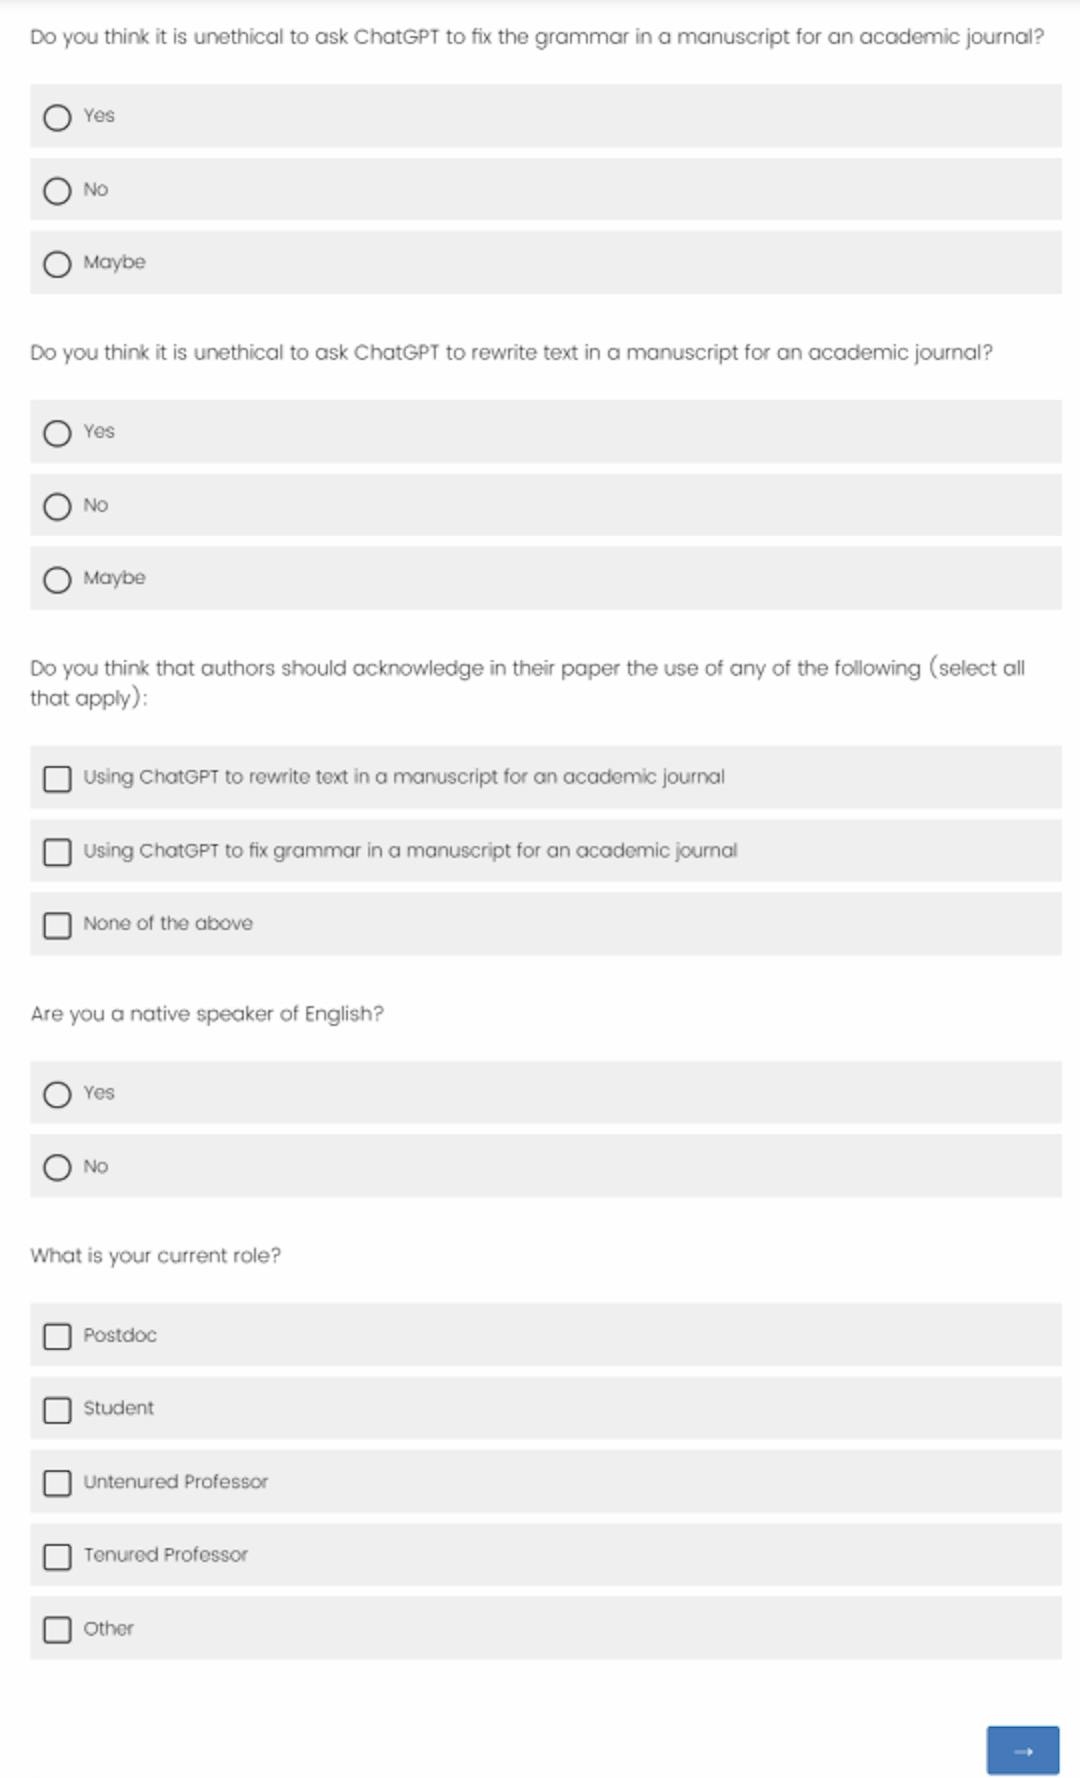 Figure 10: Survey questions (page 1)